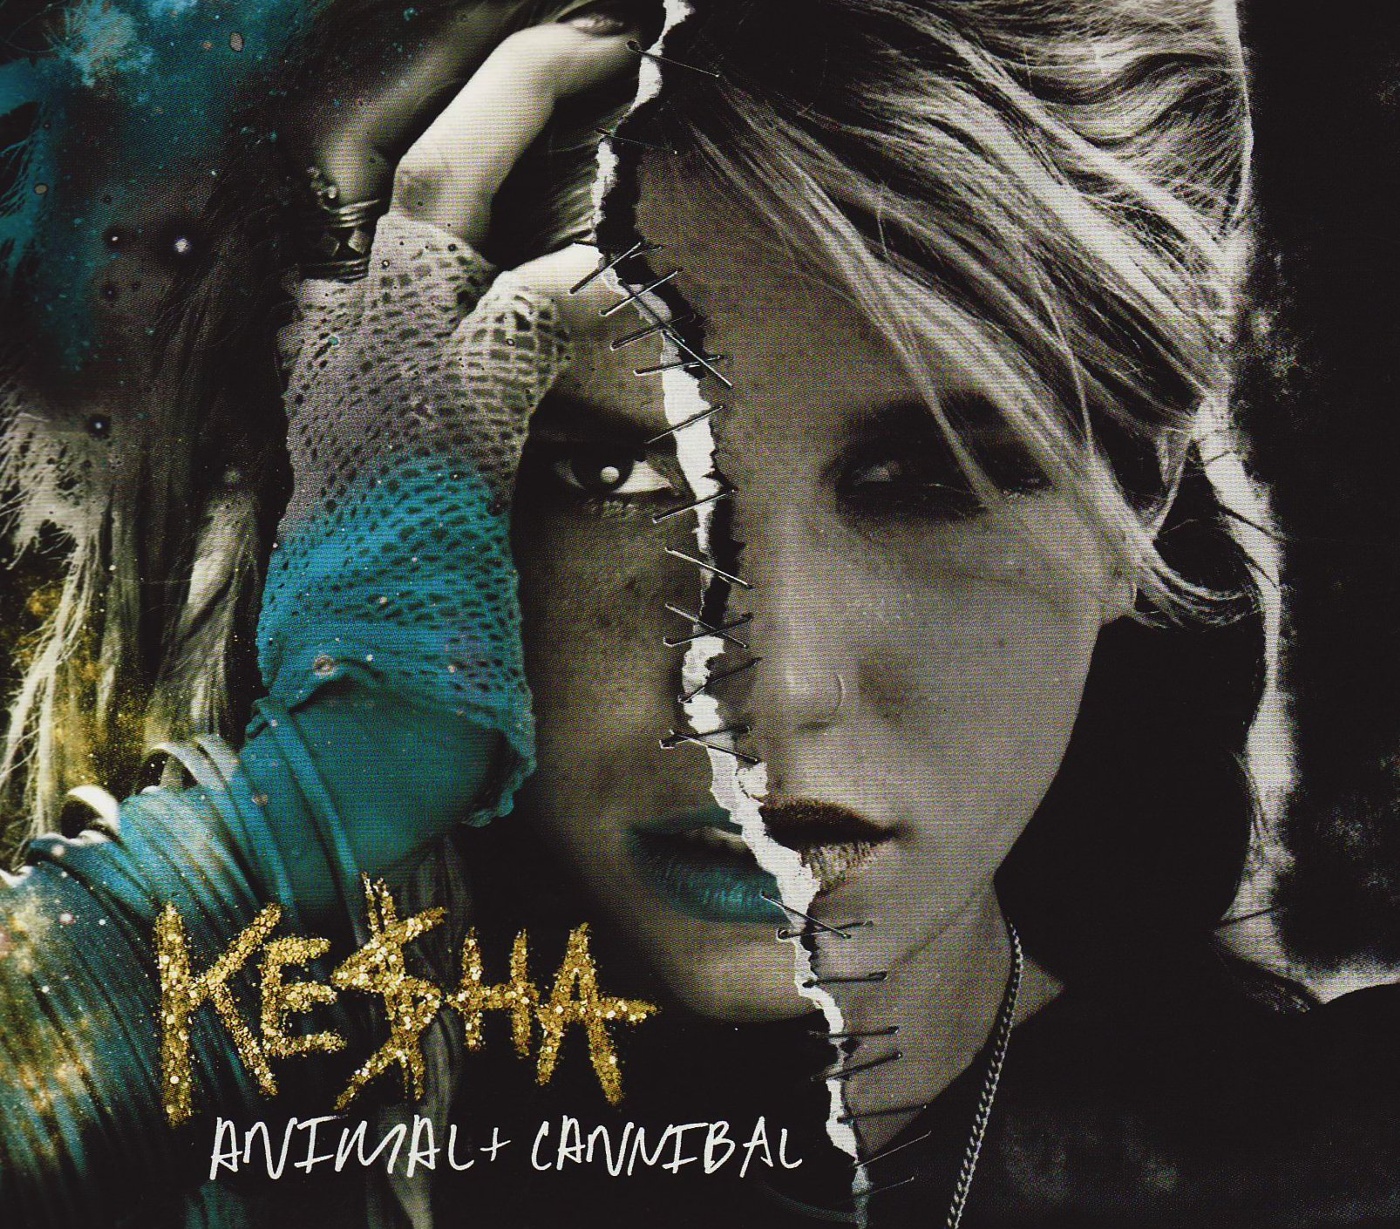 Купить альбом Kesha-animal+cannibal [2 CD] на компакт-диске. 🚚 Самовывоз, ...